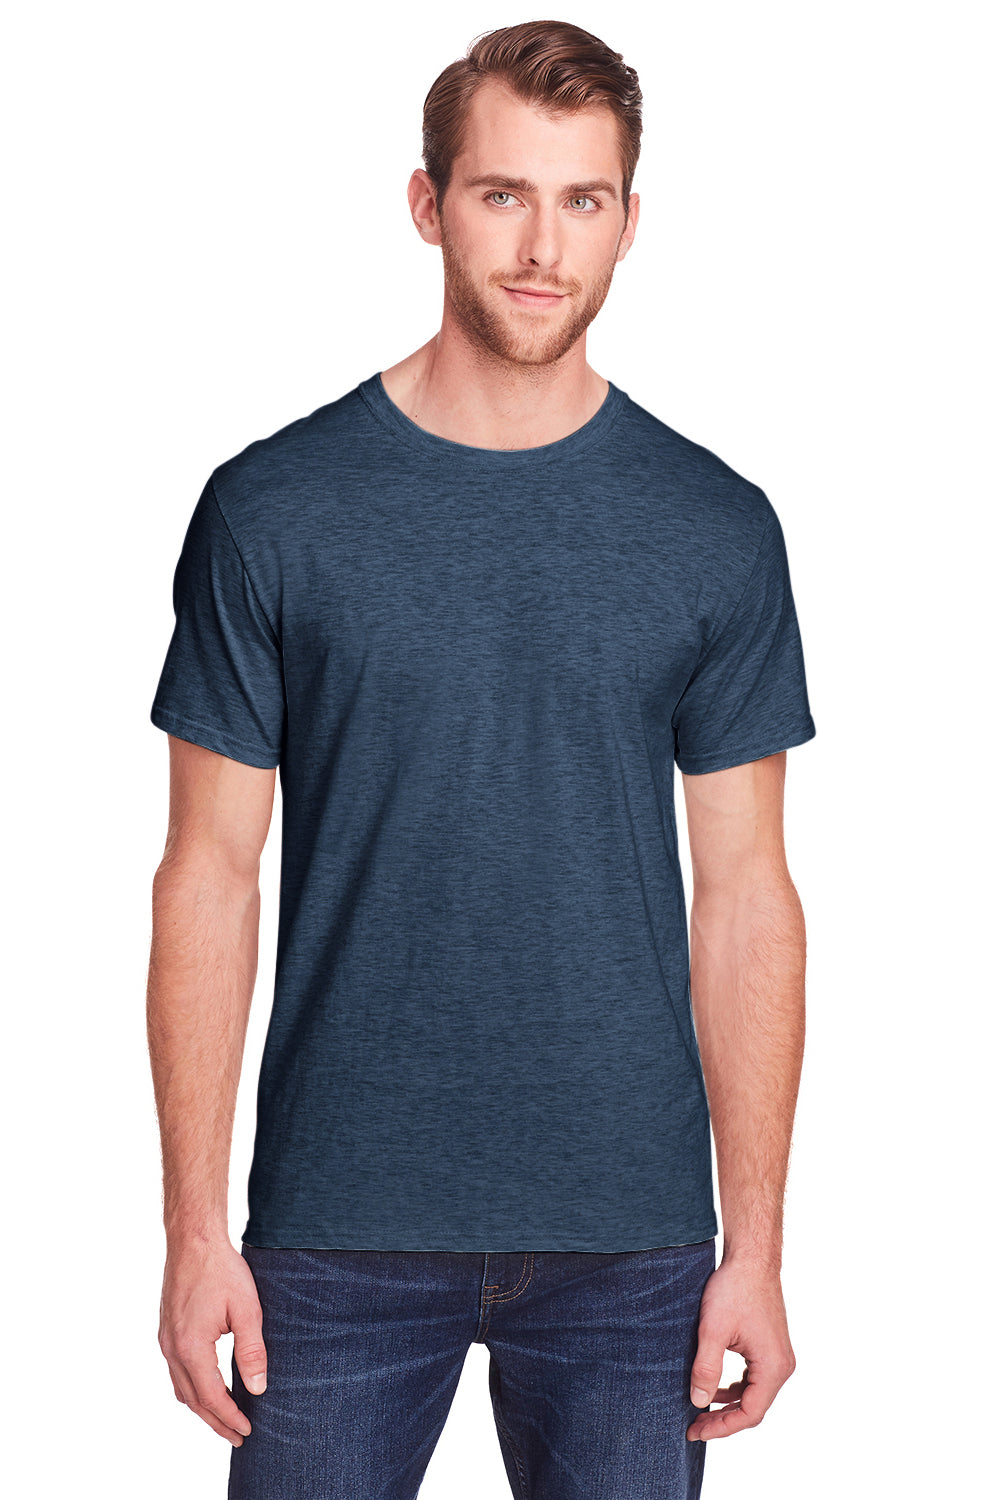 Fruit Of The Loom IC47MR Mens Iconic Short Sleeve Crewneck T-Shirt Heather Indigo Blue Blue Front